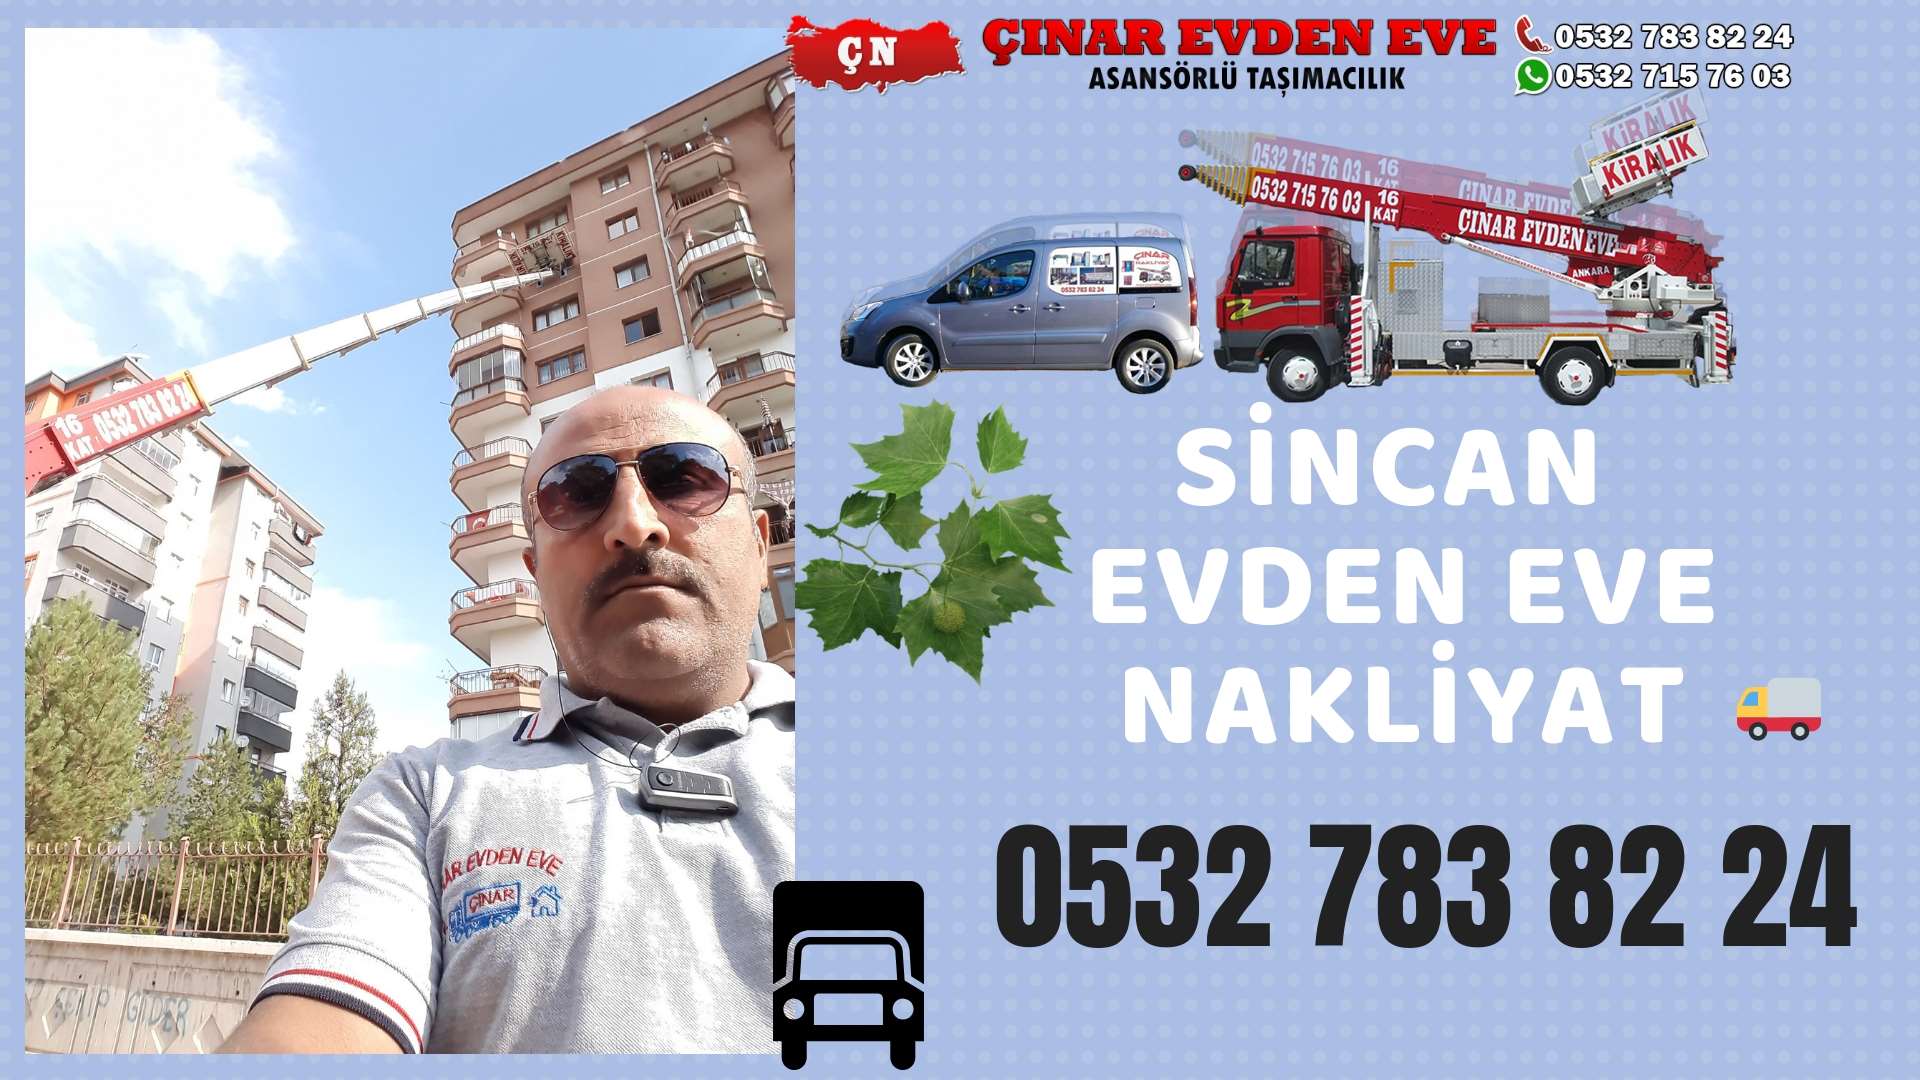 Ankara Haymana Evden Eve Nakliyat, Asansörlü Taşımacılık, Ofis / İş Yeri Taşıma 0532 715 76 03